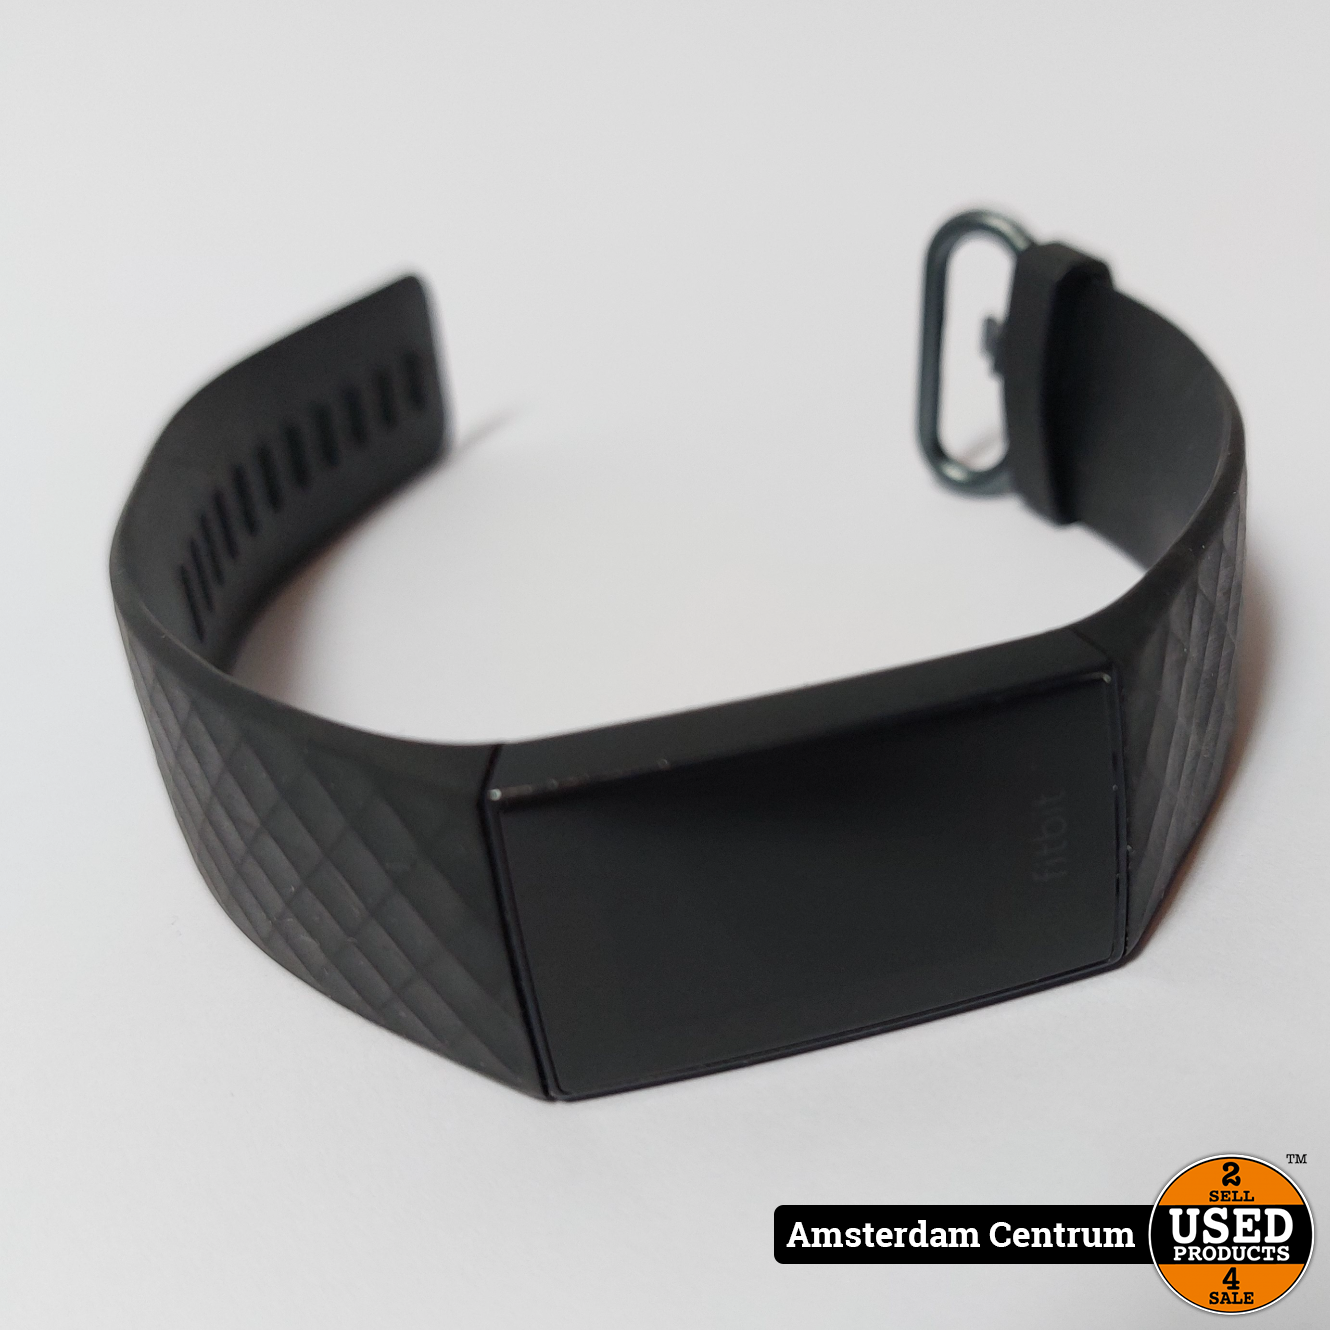 Raad navigatie houd er rekening mee dat Fitbit Charge 4 - Incl. Garantie - Used Products Amsterdam Centrum